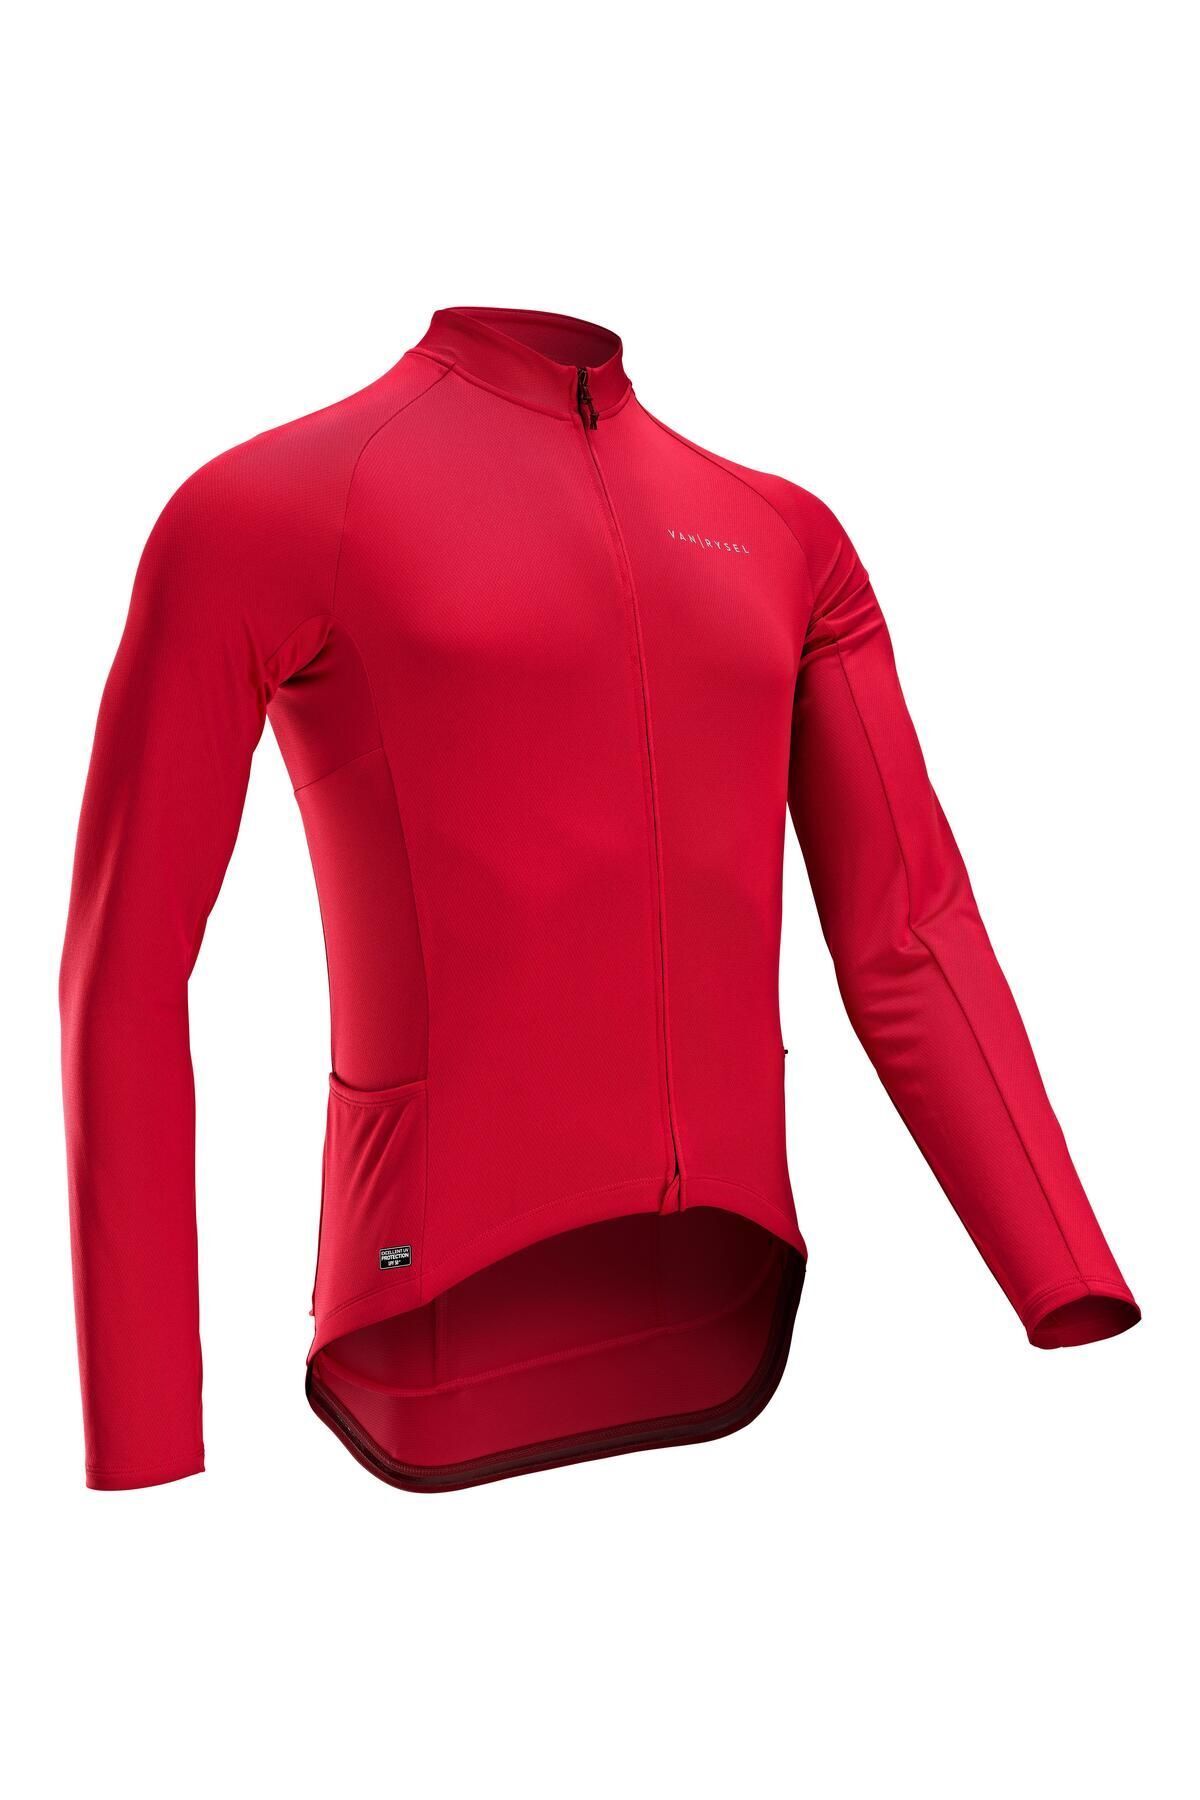 Decathlon Erkek Uzun Kollu Bisiklet Forması - Kırmızı - Rc100